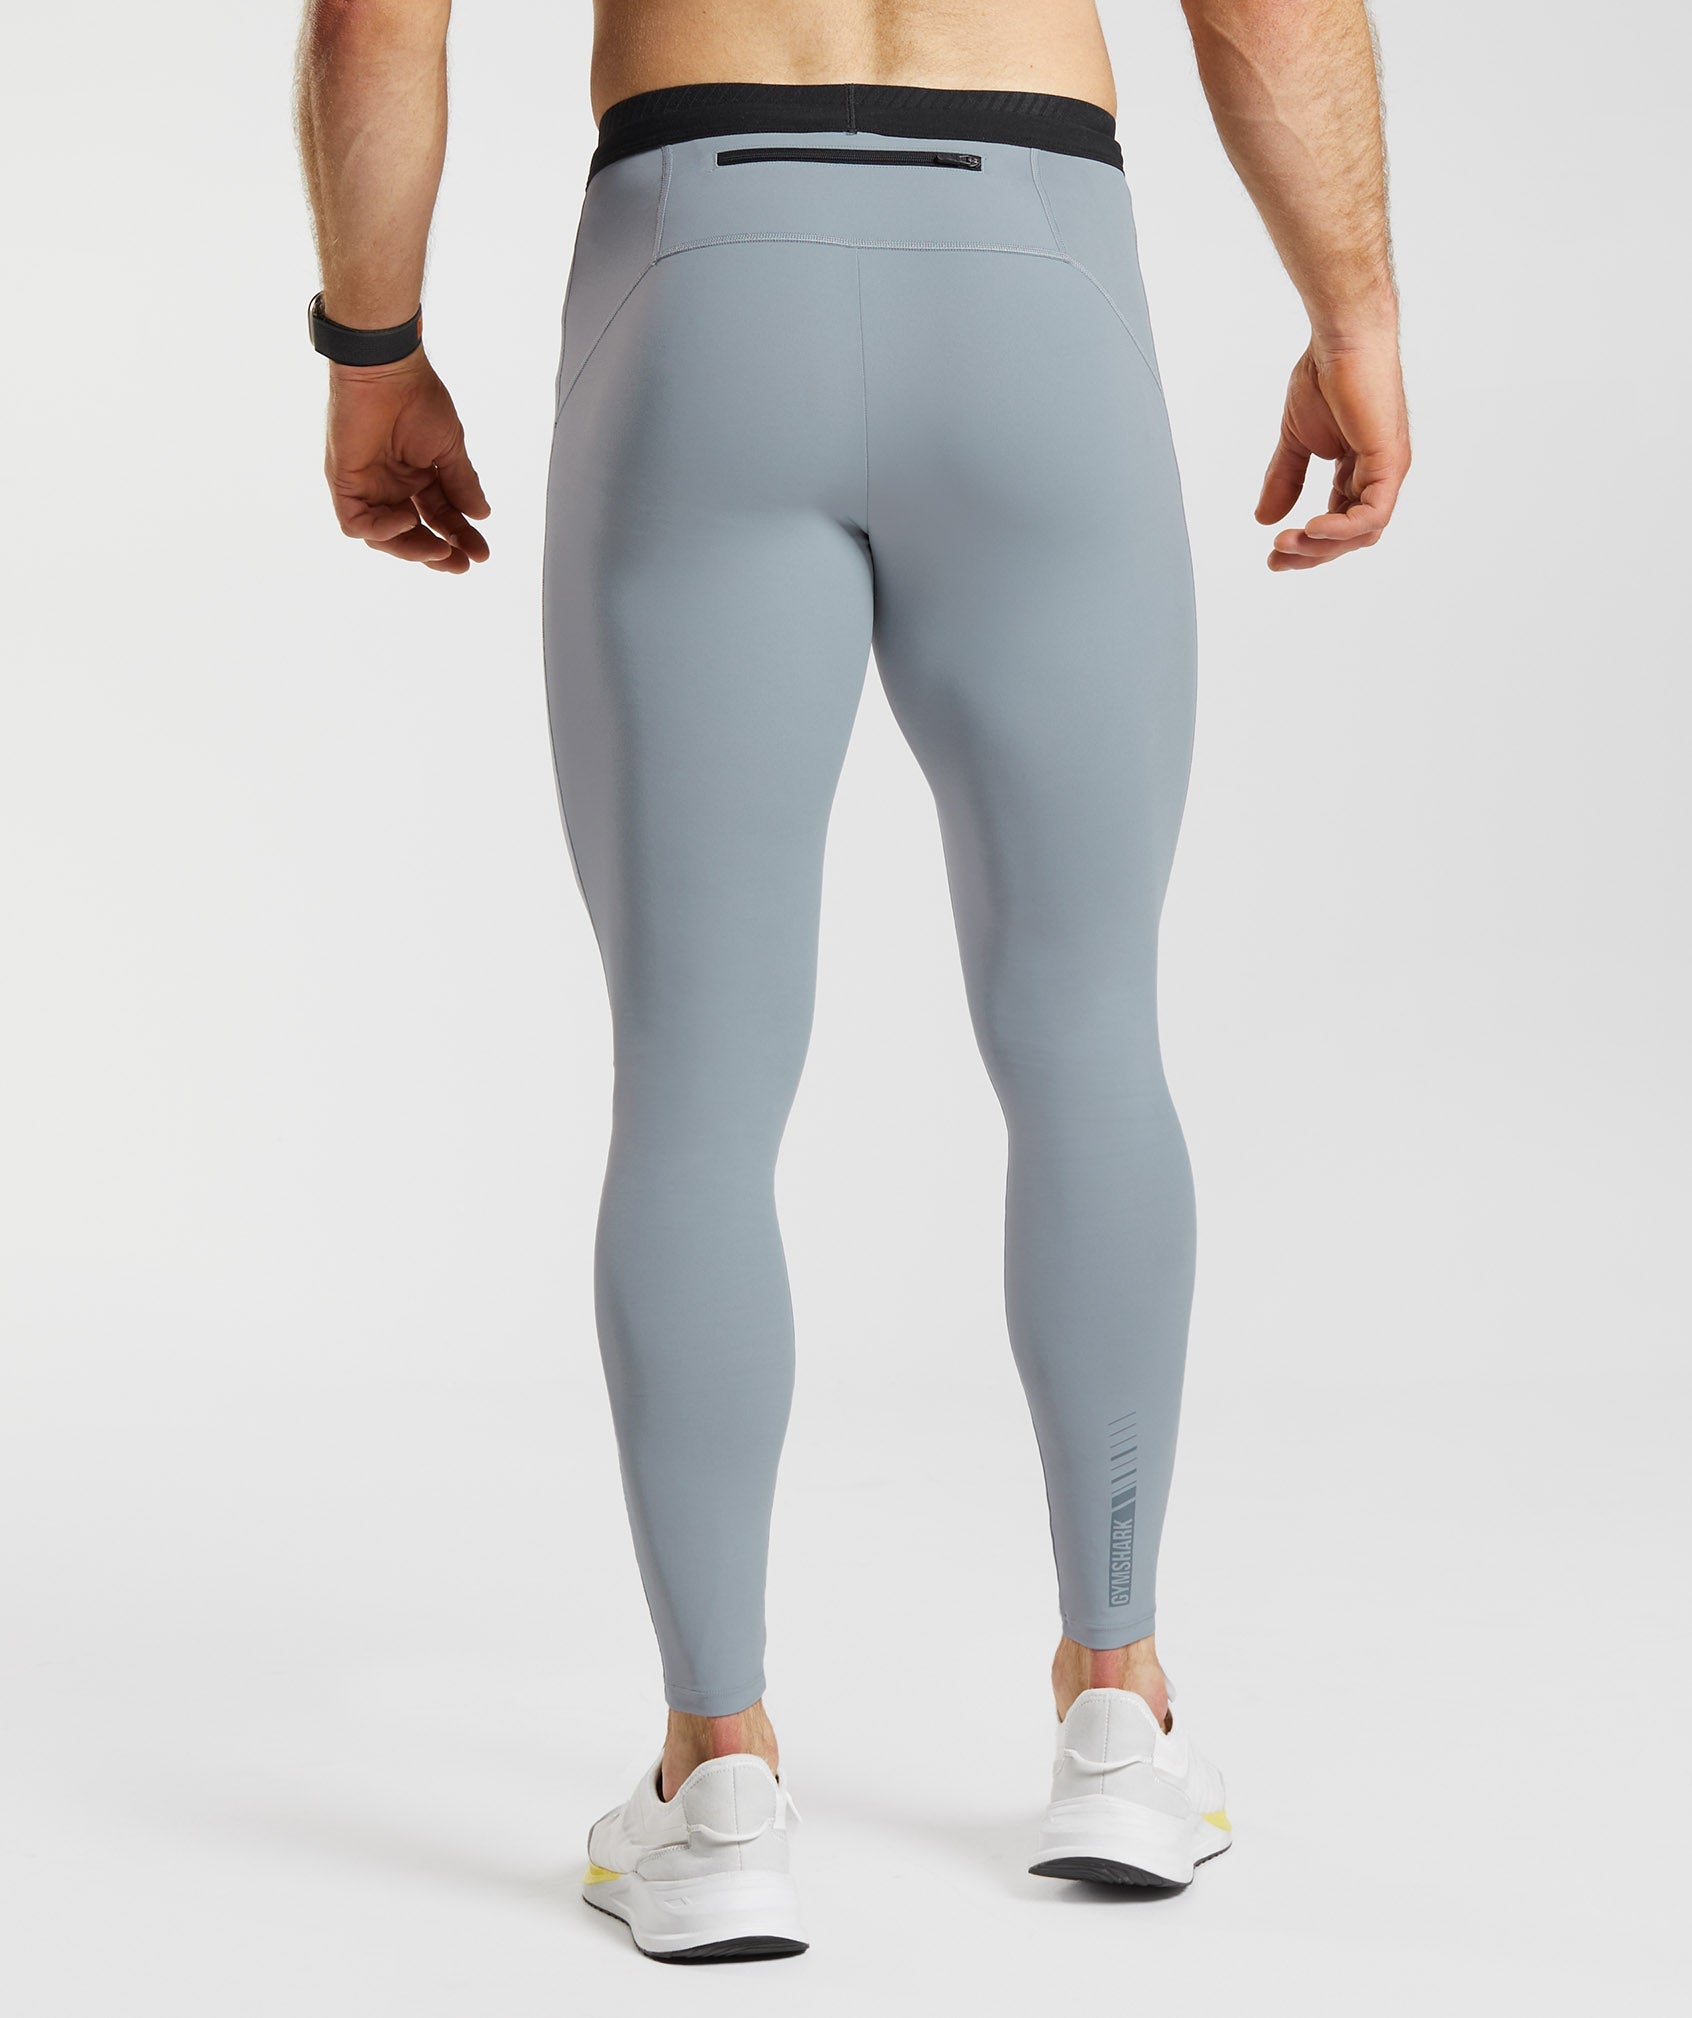 Men's Running Leggings & Tights - Gymshark